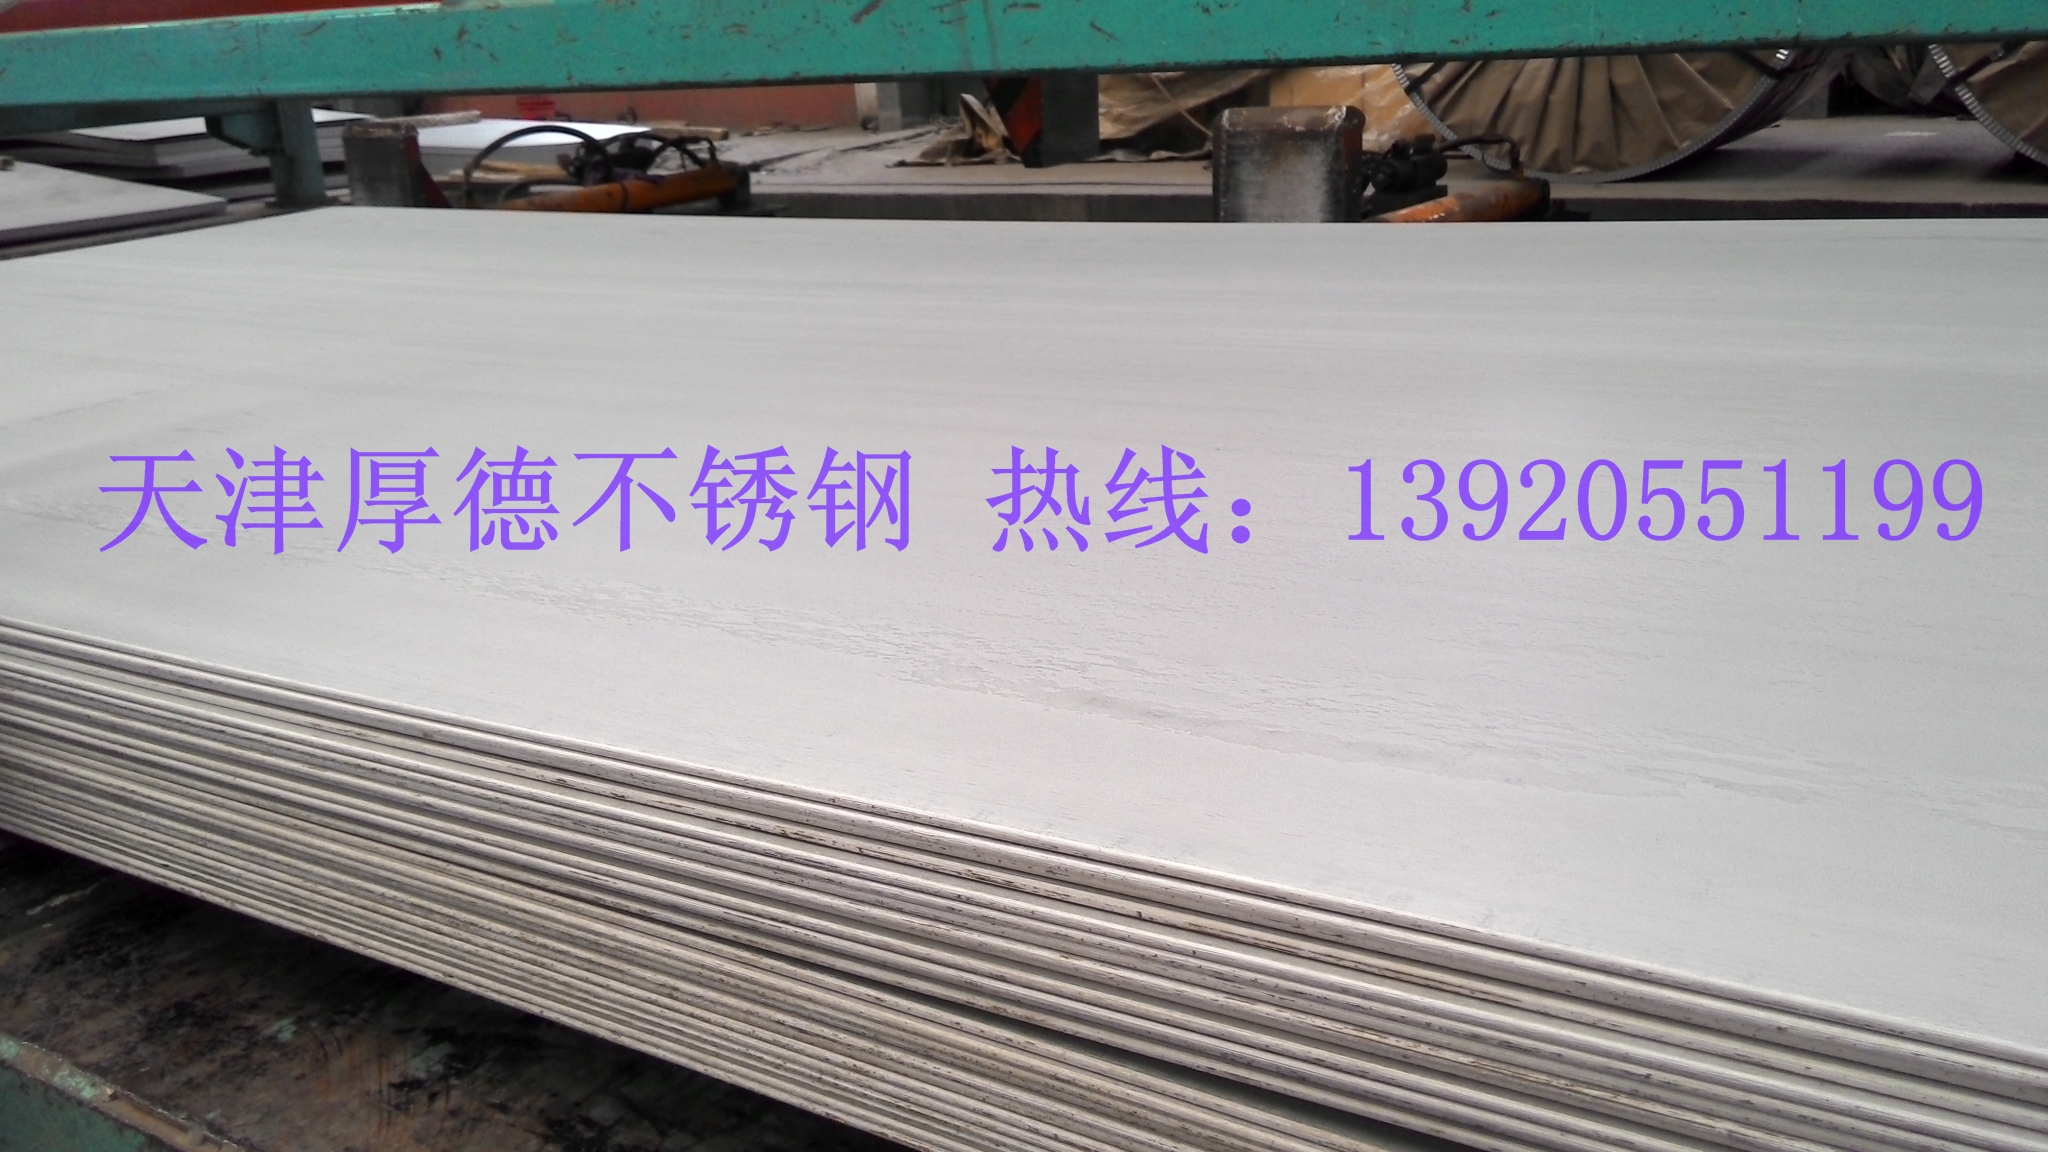 耐腐蚀不锈钢板哪里有 耐腐蚀不锈钢白钢板多少钱 耐腐蚀白钢板价格